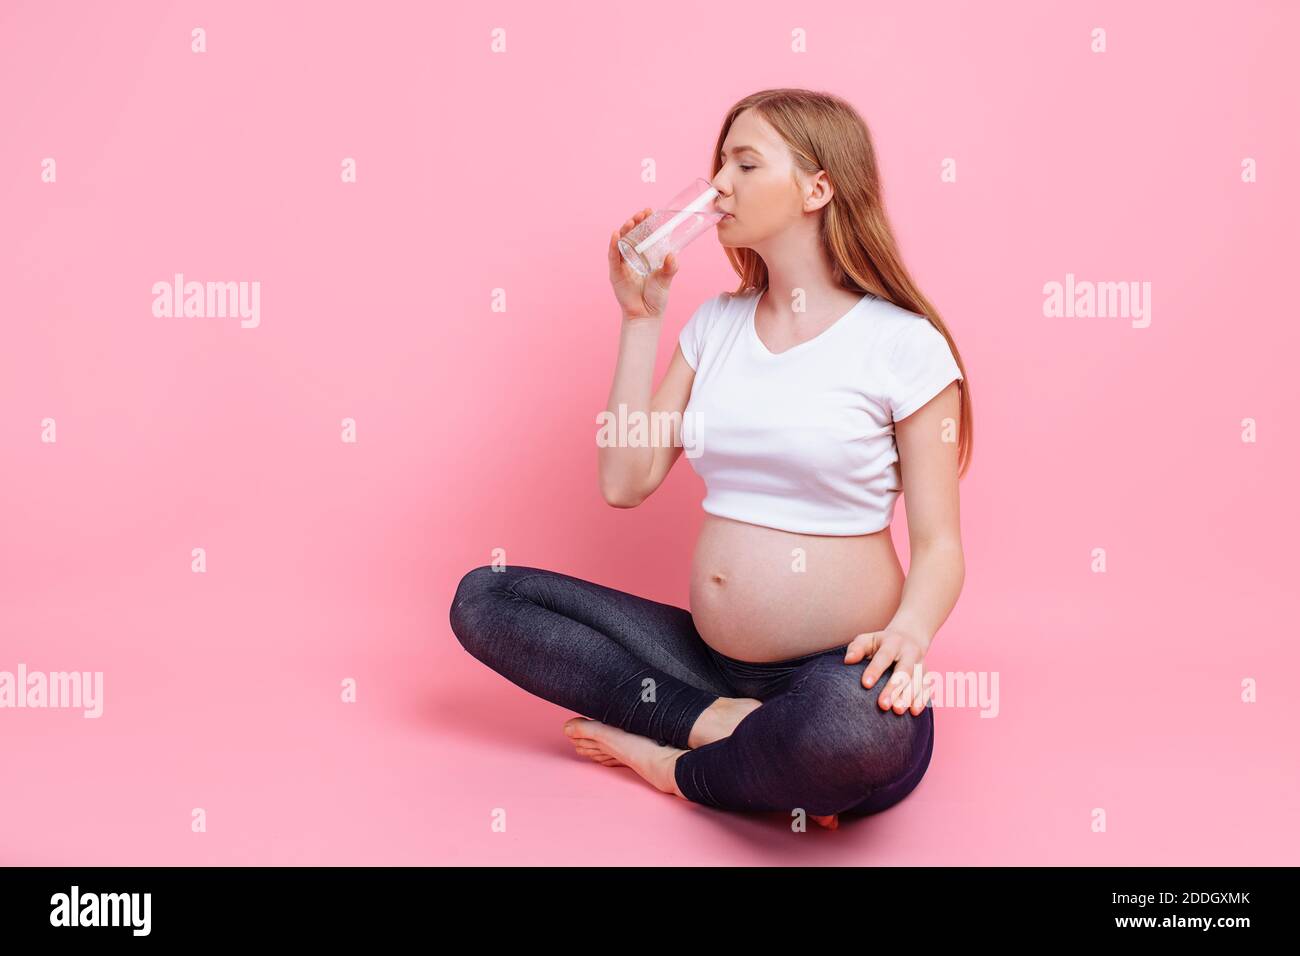 Fille enceinte tenant un verre d'eau sur le fond d'un ventre enceinte, sur un fond rose, le concept de la quantité d'eau consommée Banque D'Images